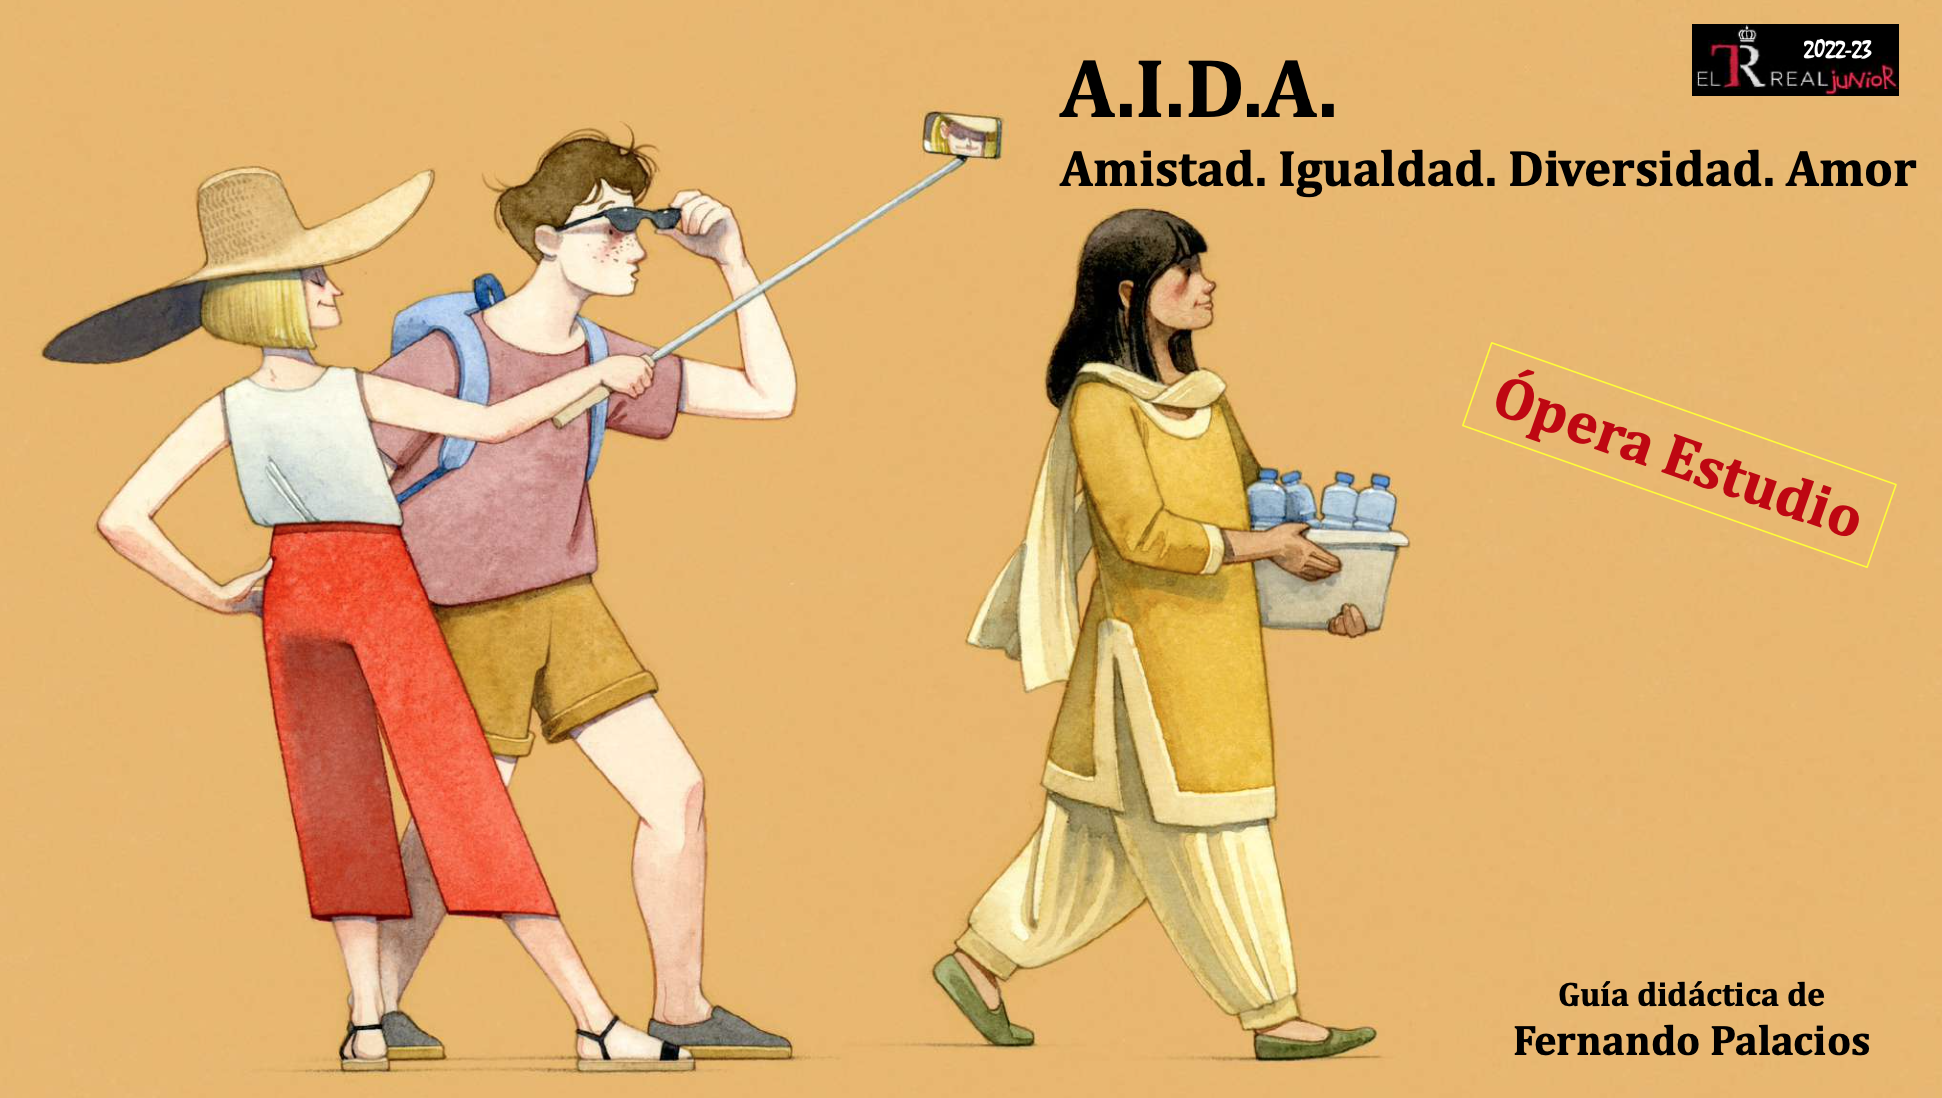 Cartel publicitario de "A.I.D.A." del Teatro Real Junior